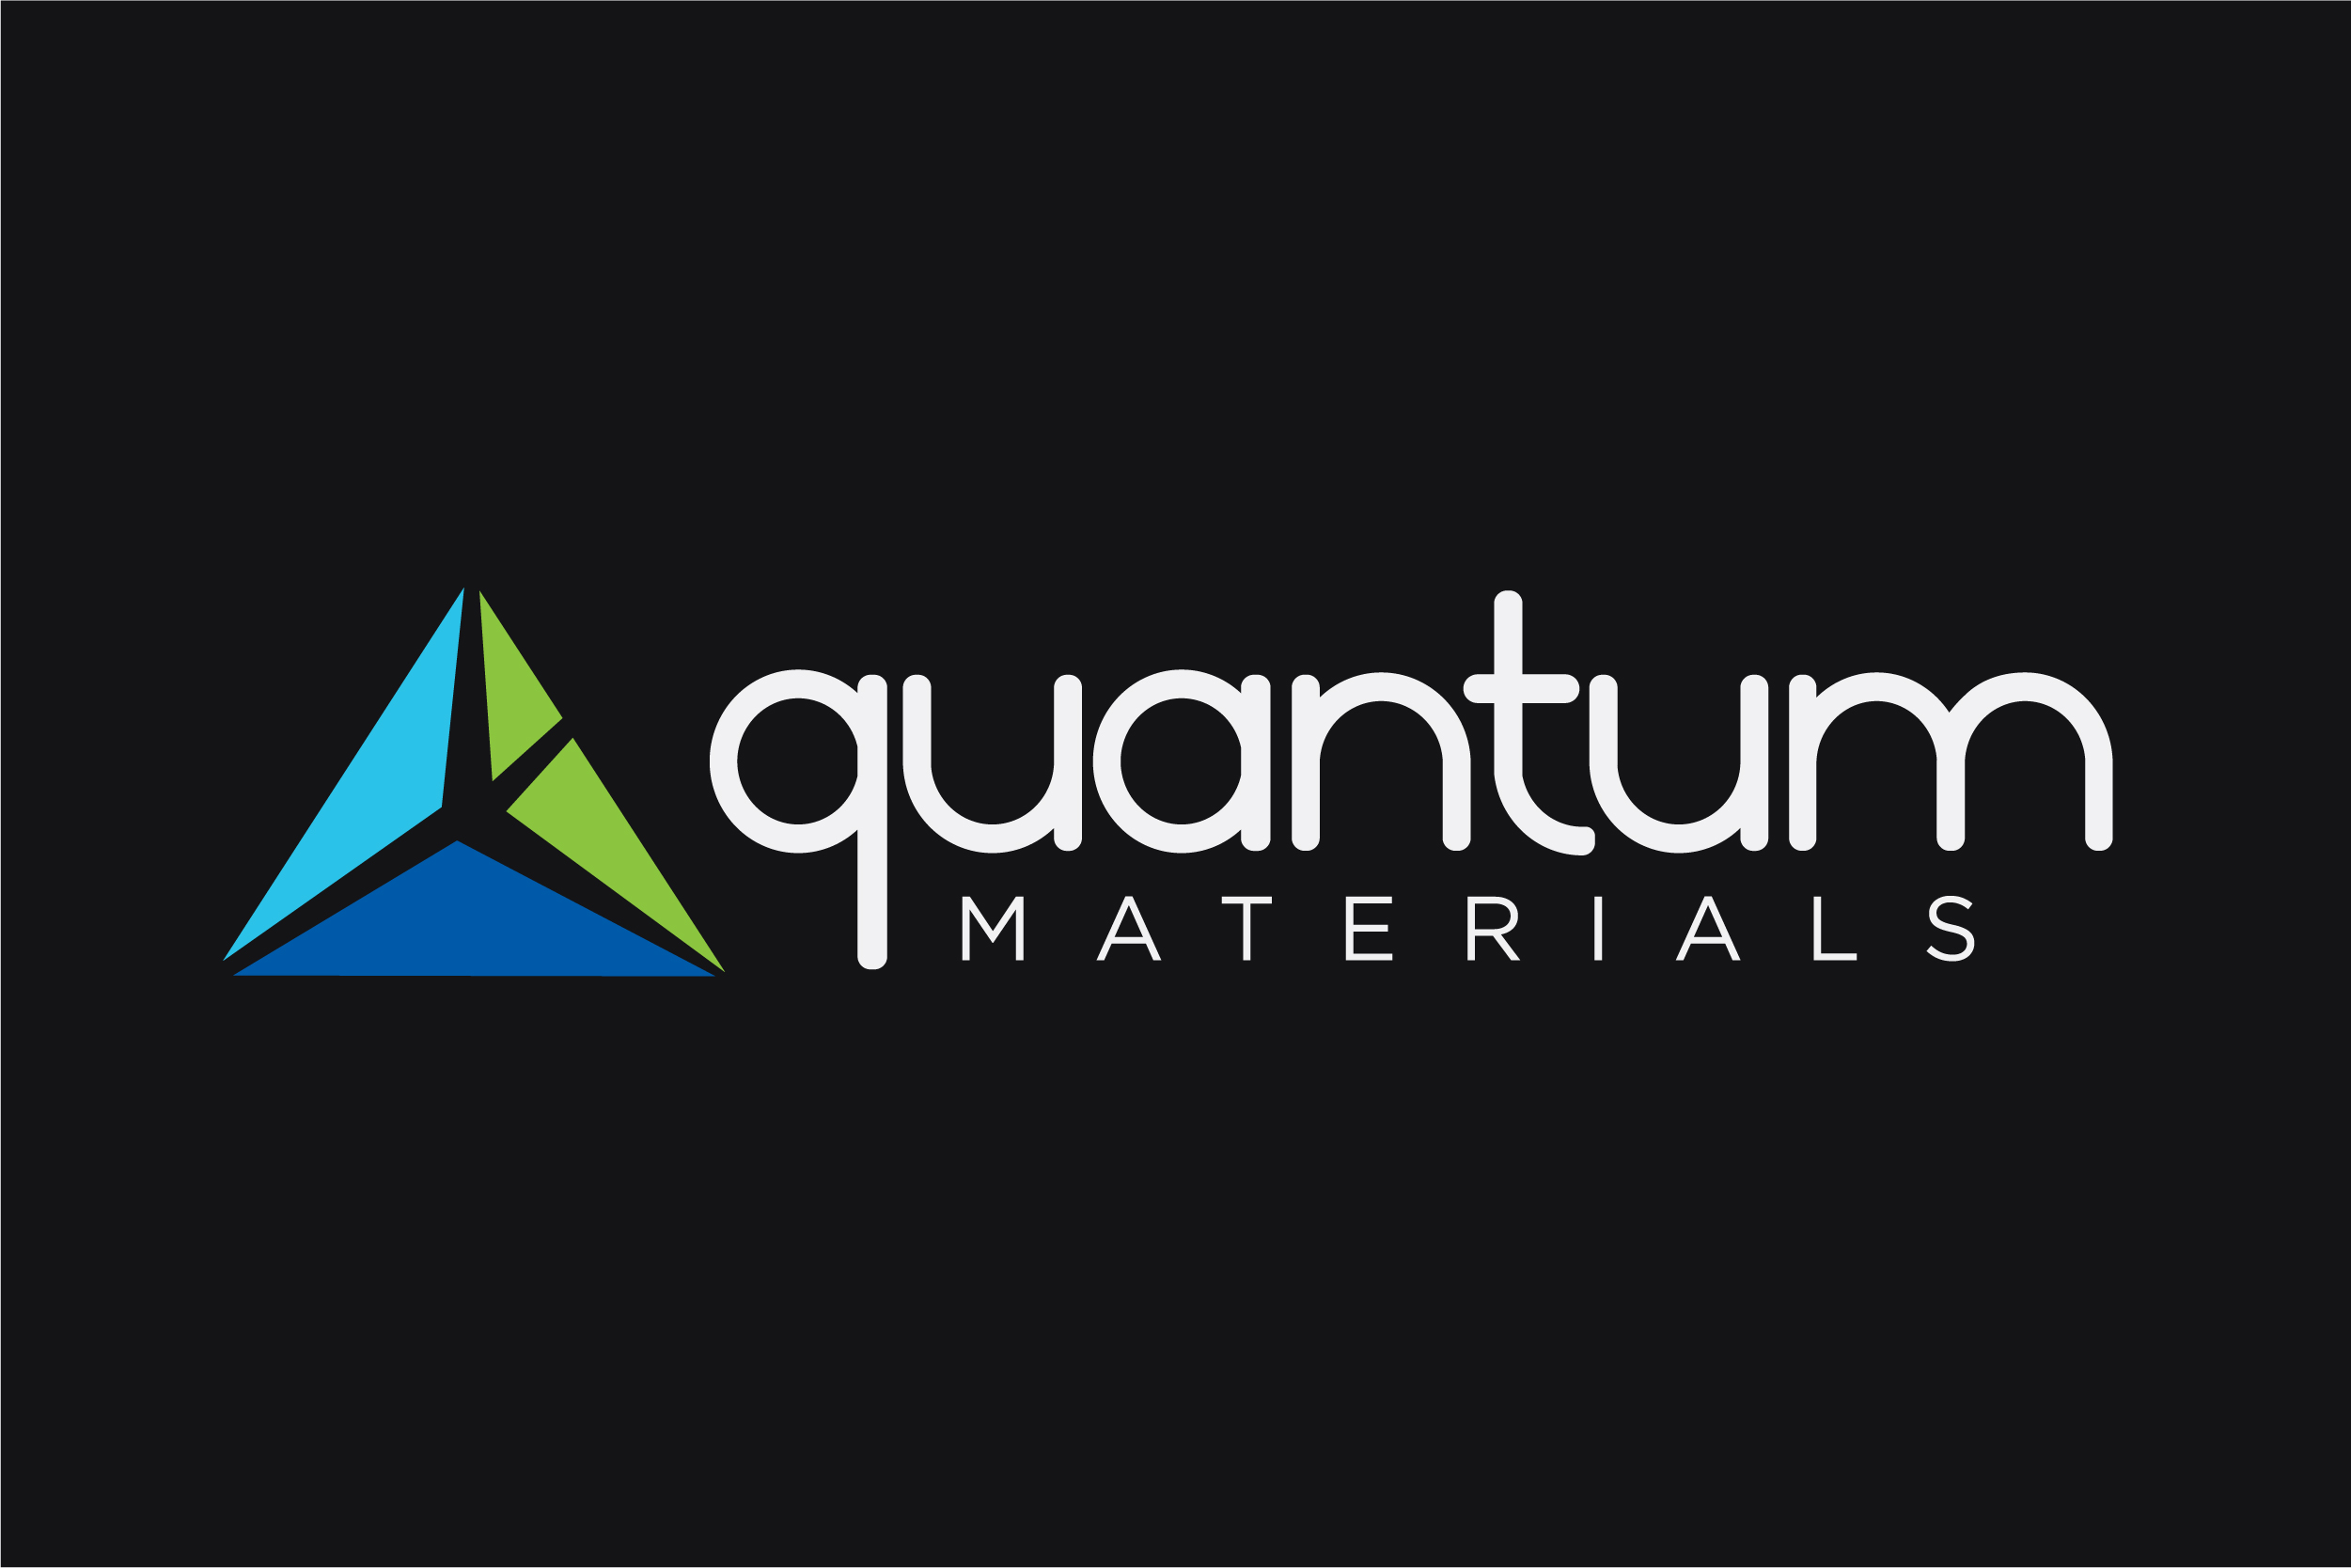 Quantum Materials